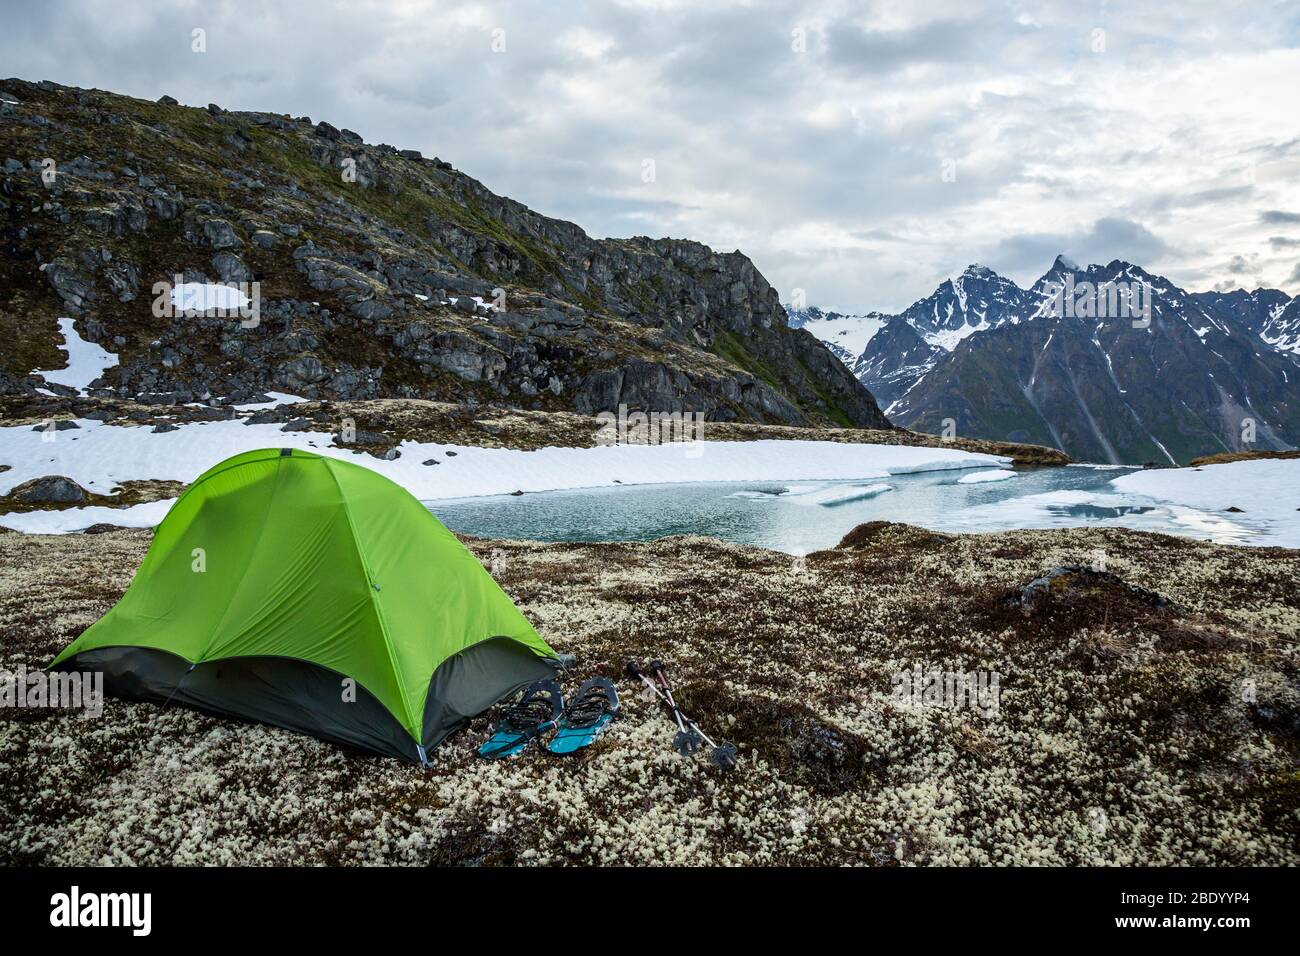 Tenda verde per una persona con racchette da neve su un lago parzialmente ghiacciato. Campeggio solo in primavera nella remota natura selvaggia dell'Alaska. Foto Stock